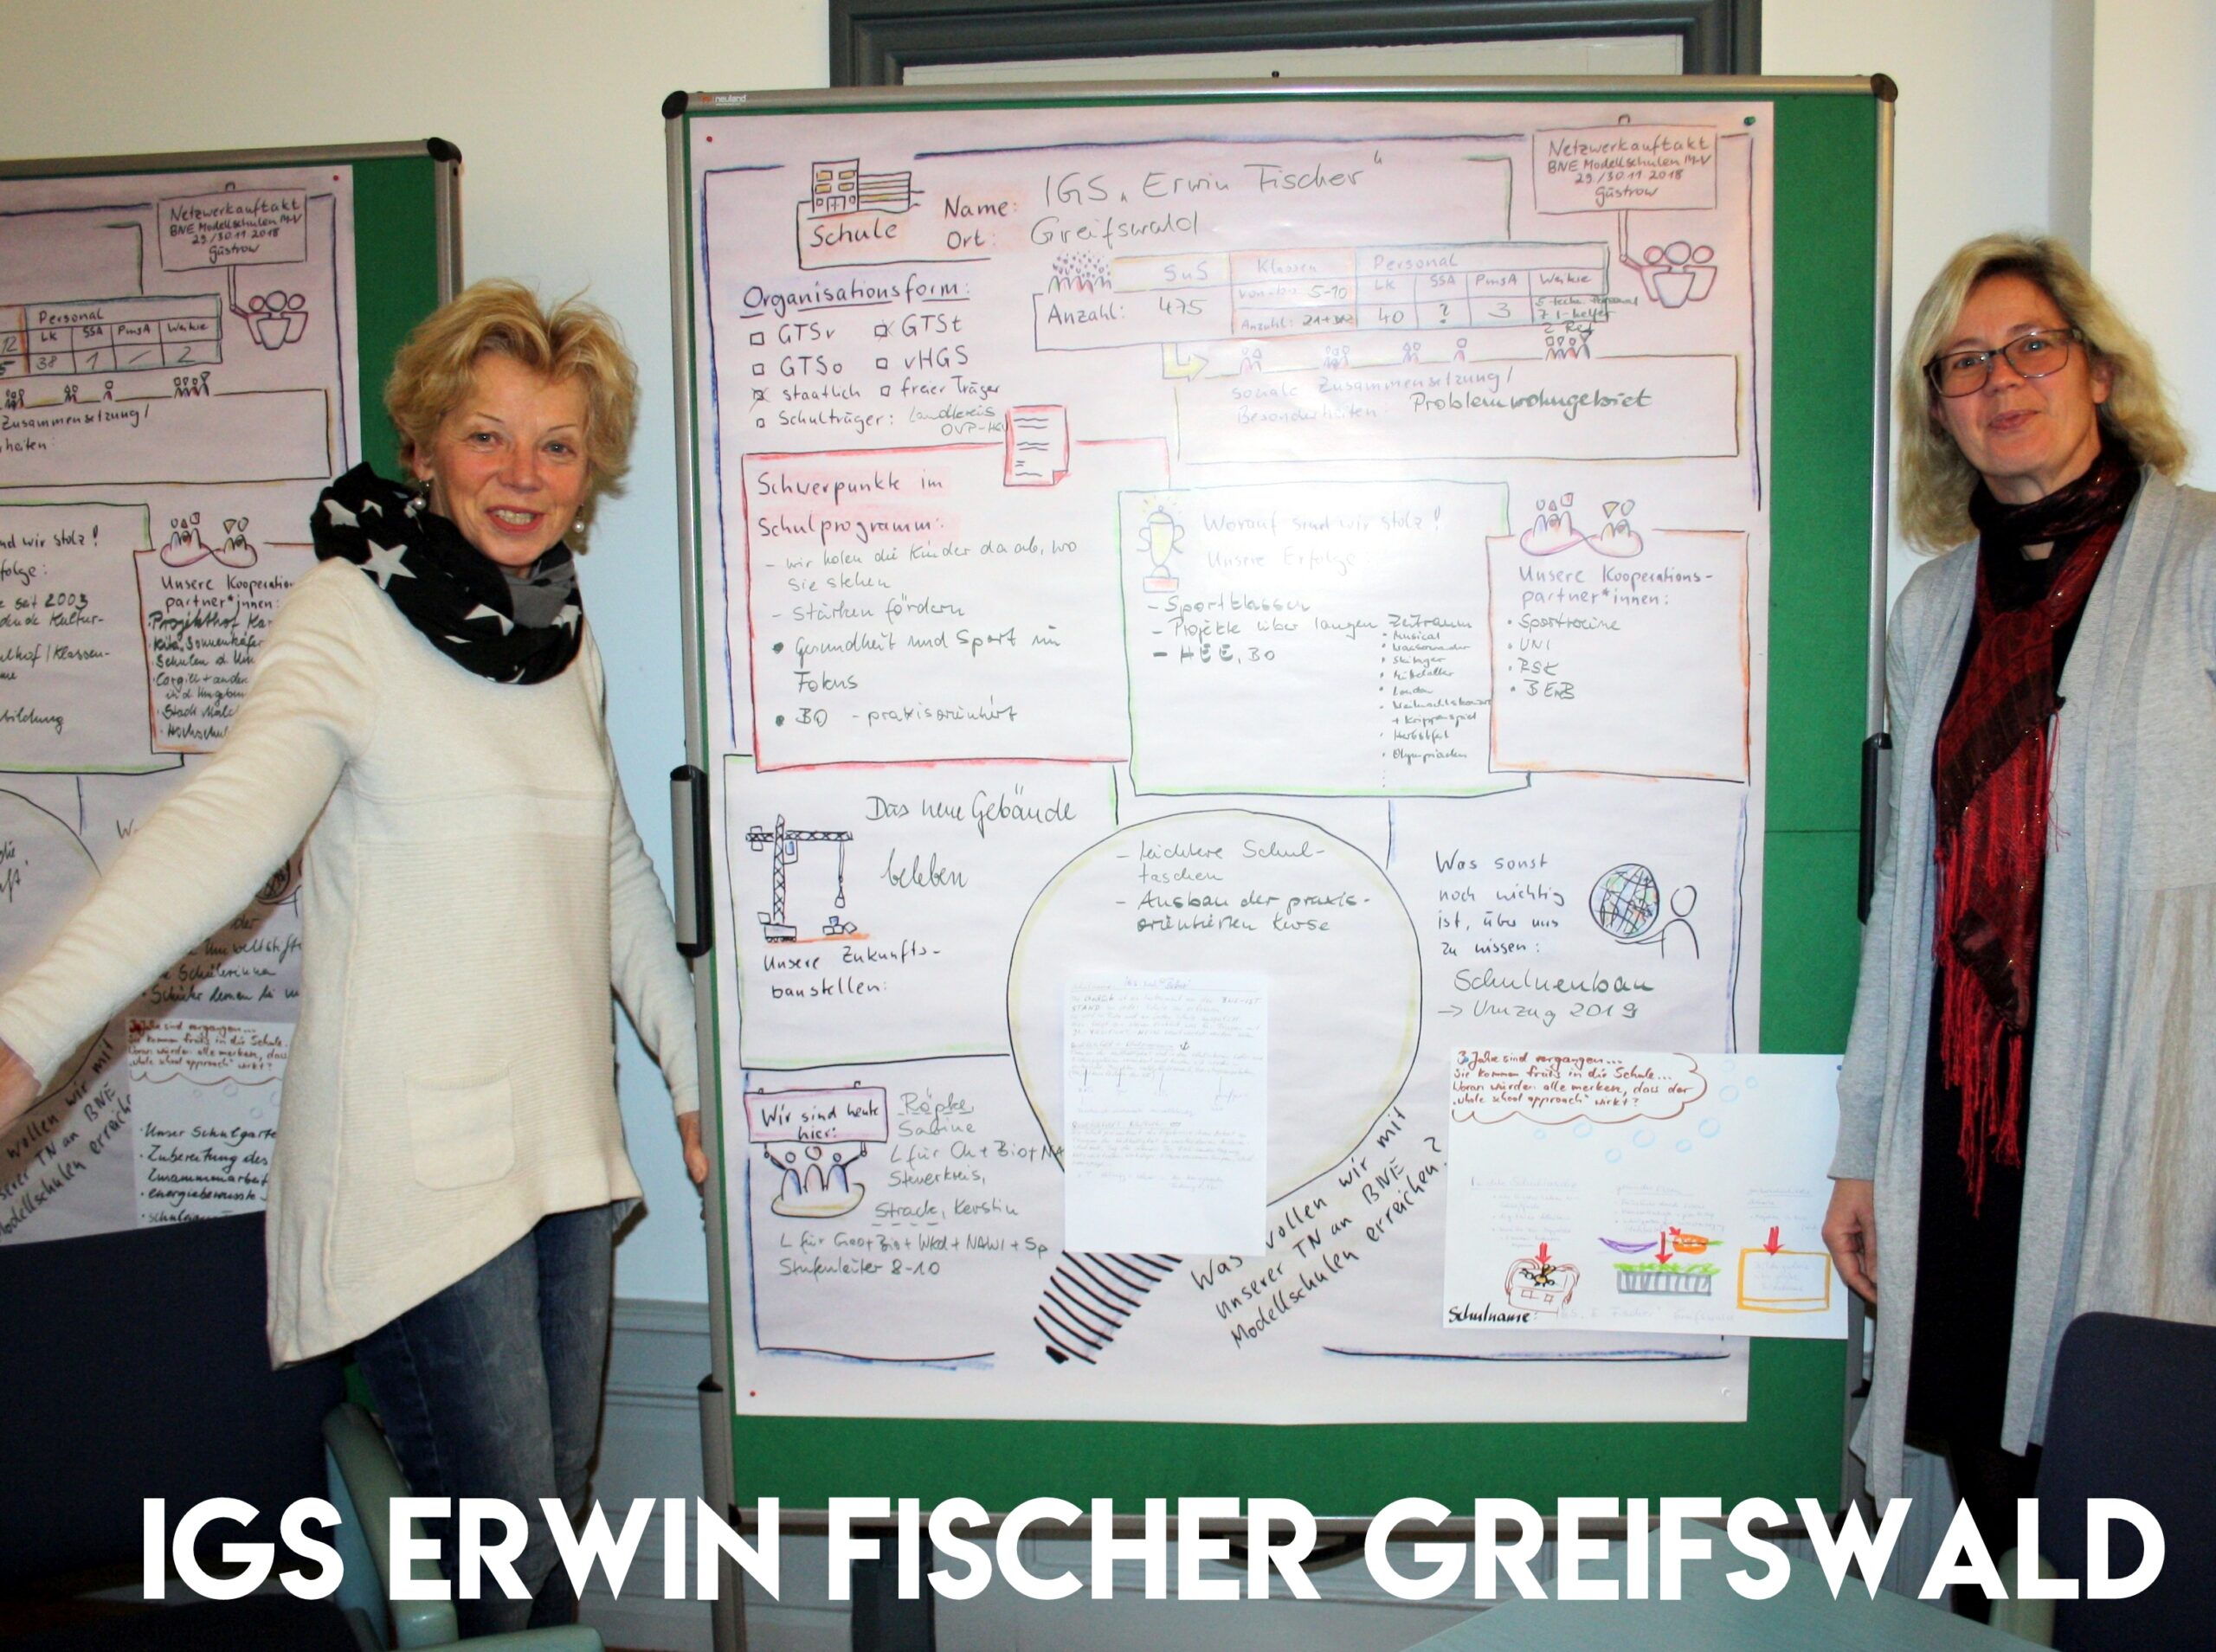 IGS Erwin Fischer Greifswald